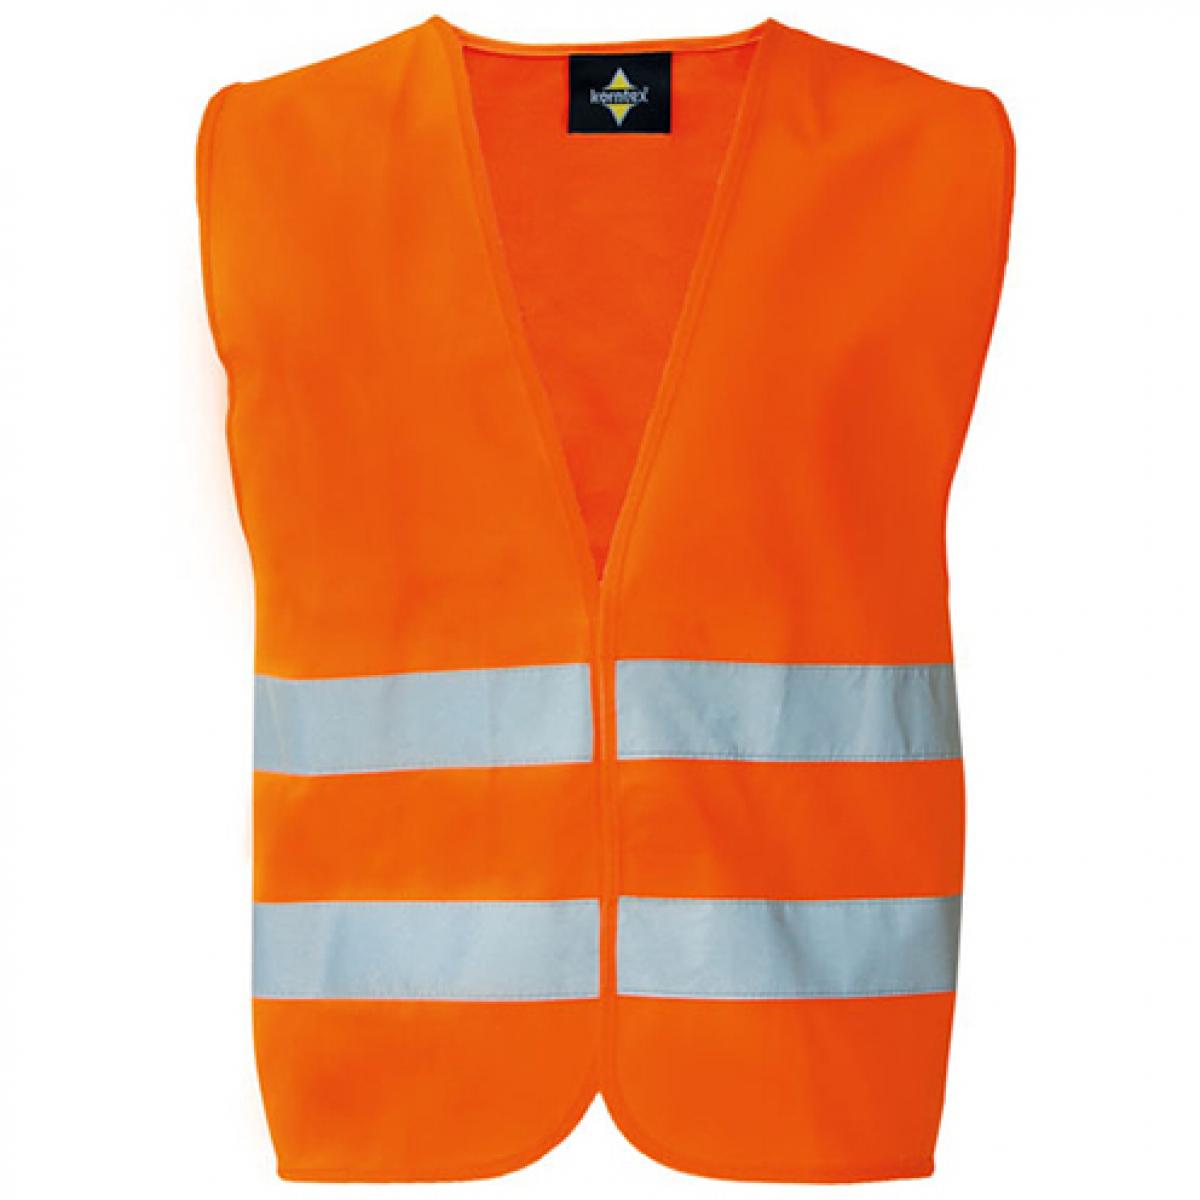 Hersteller: Korntex Herstellernummer: KXX217_D Artikelbezeichnung: Basic Safety Vest For Print Karlsruhe Sicherheitsweste Farbe: Signal Orange